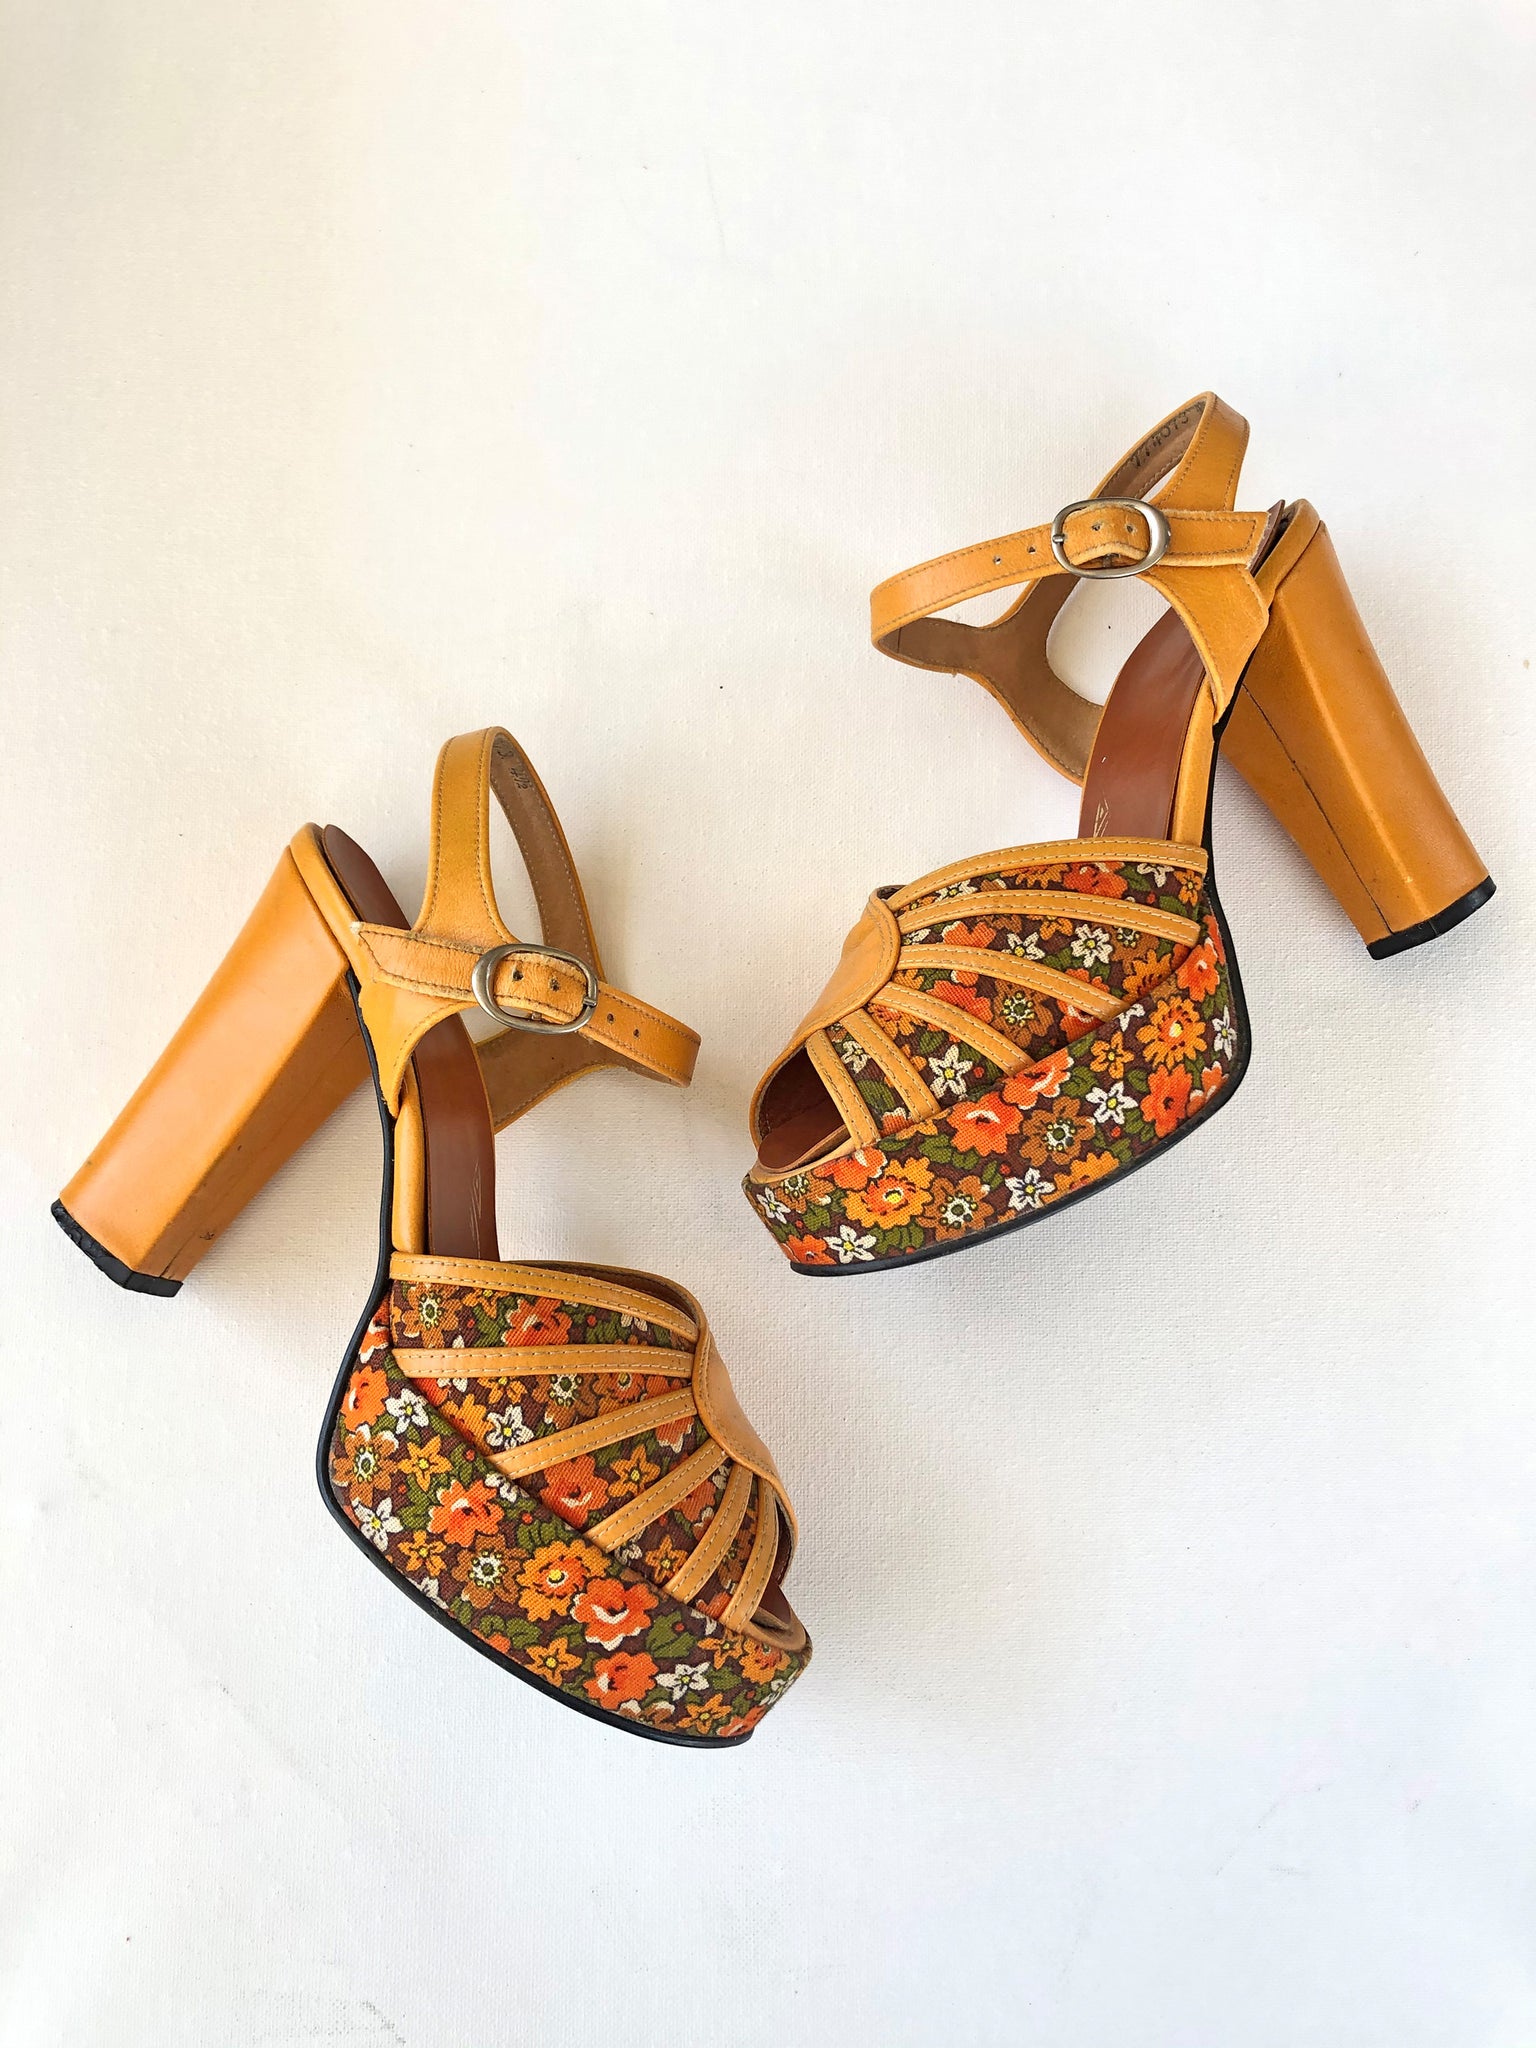 VINTAGE: Leather Platform Sandals - Orange Floral